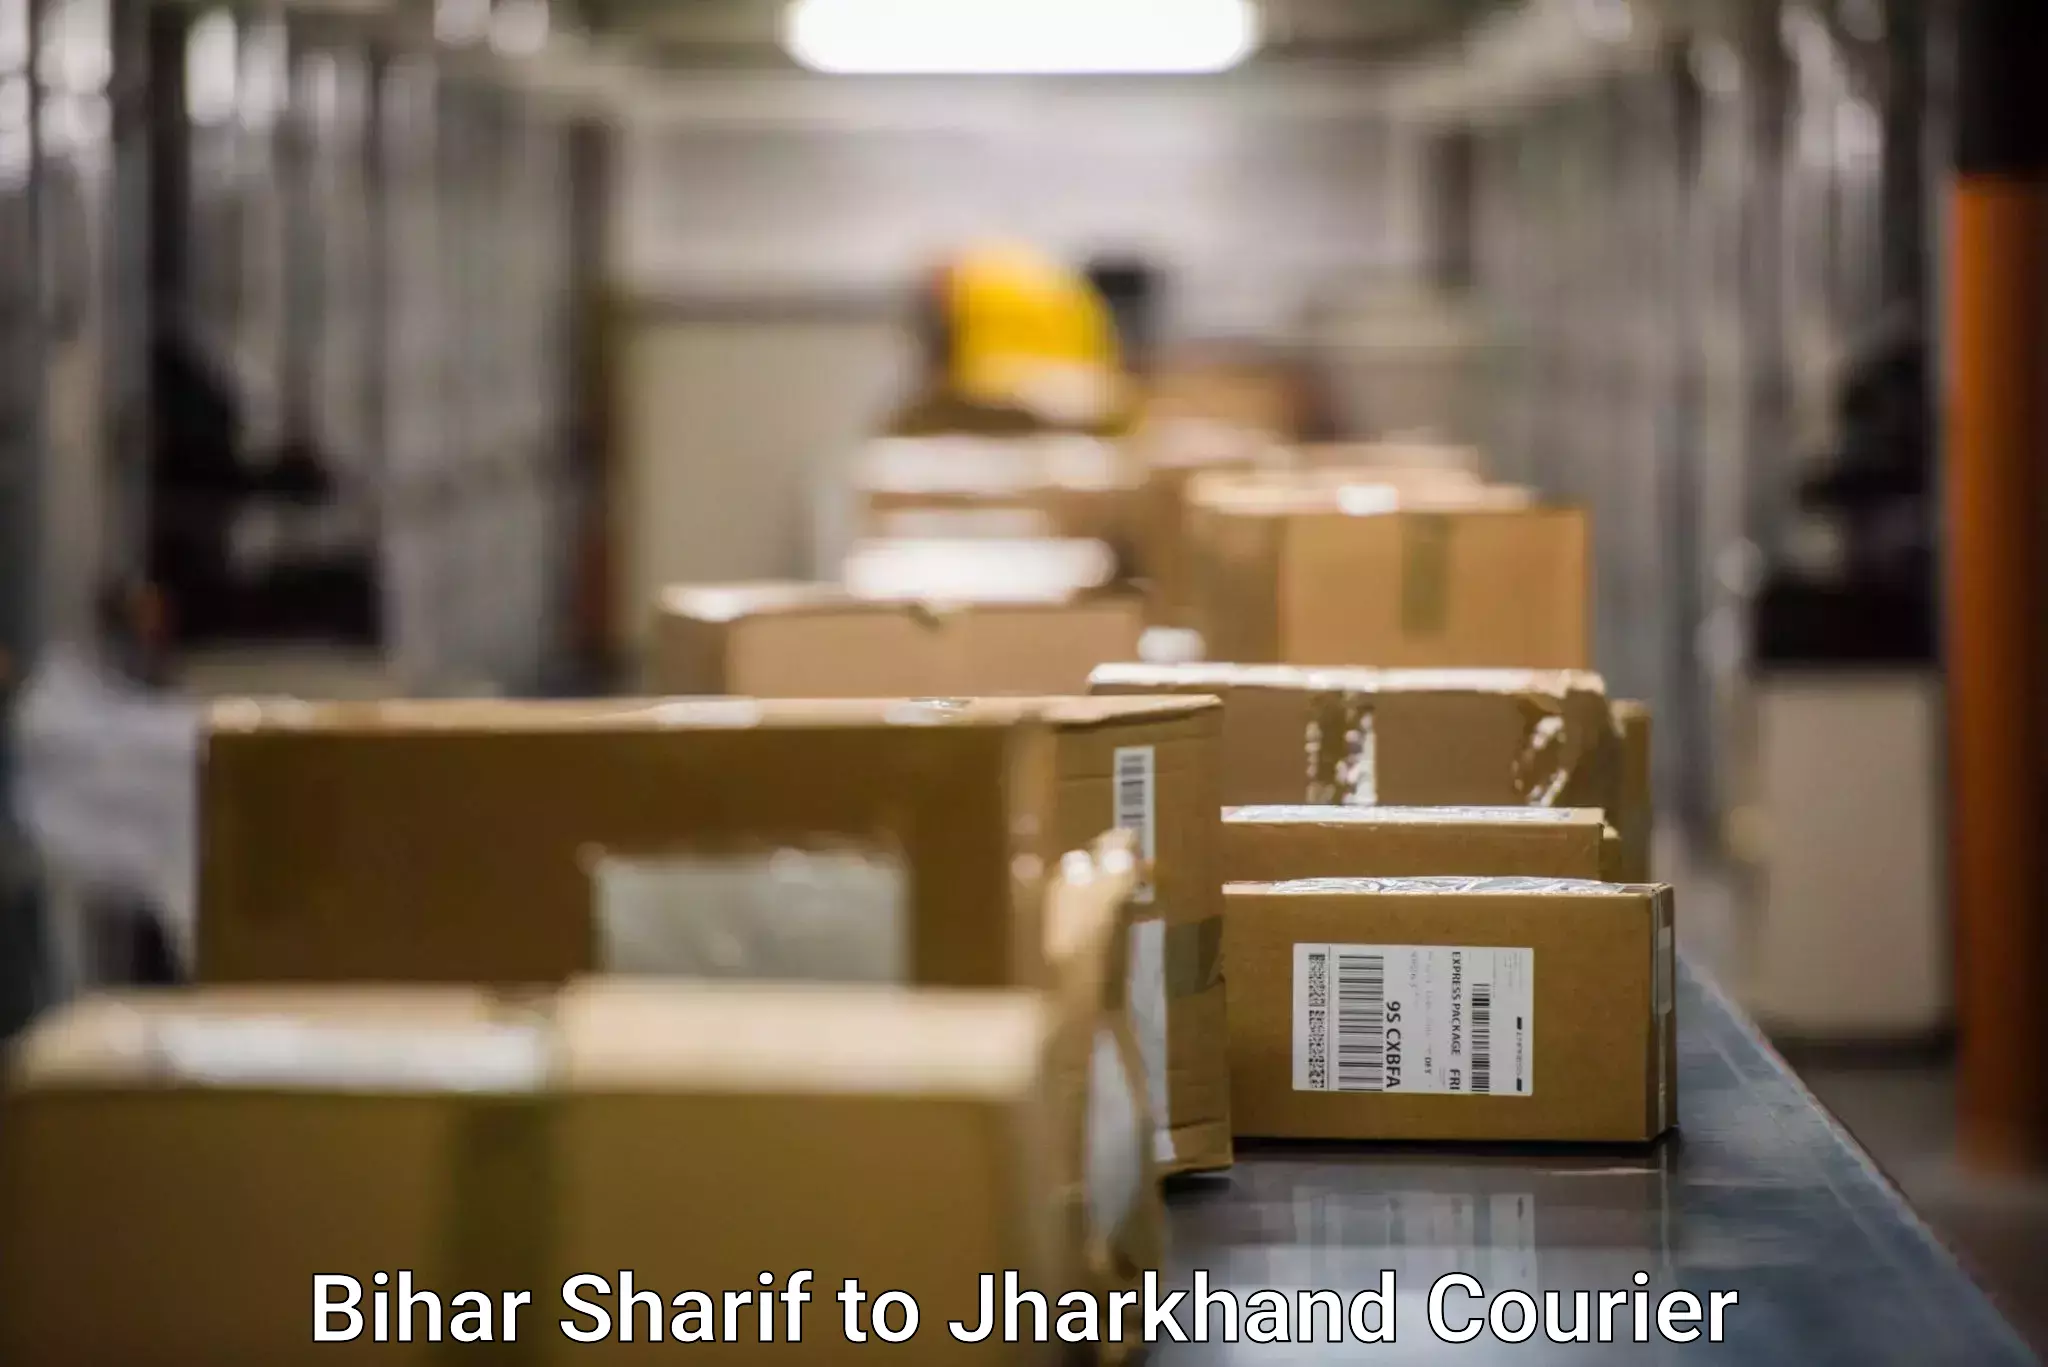 Express package handling Bihar Sharif to Jharkhand